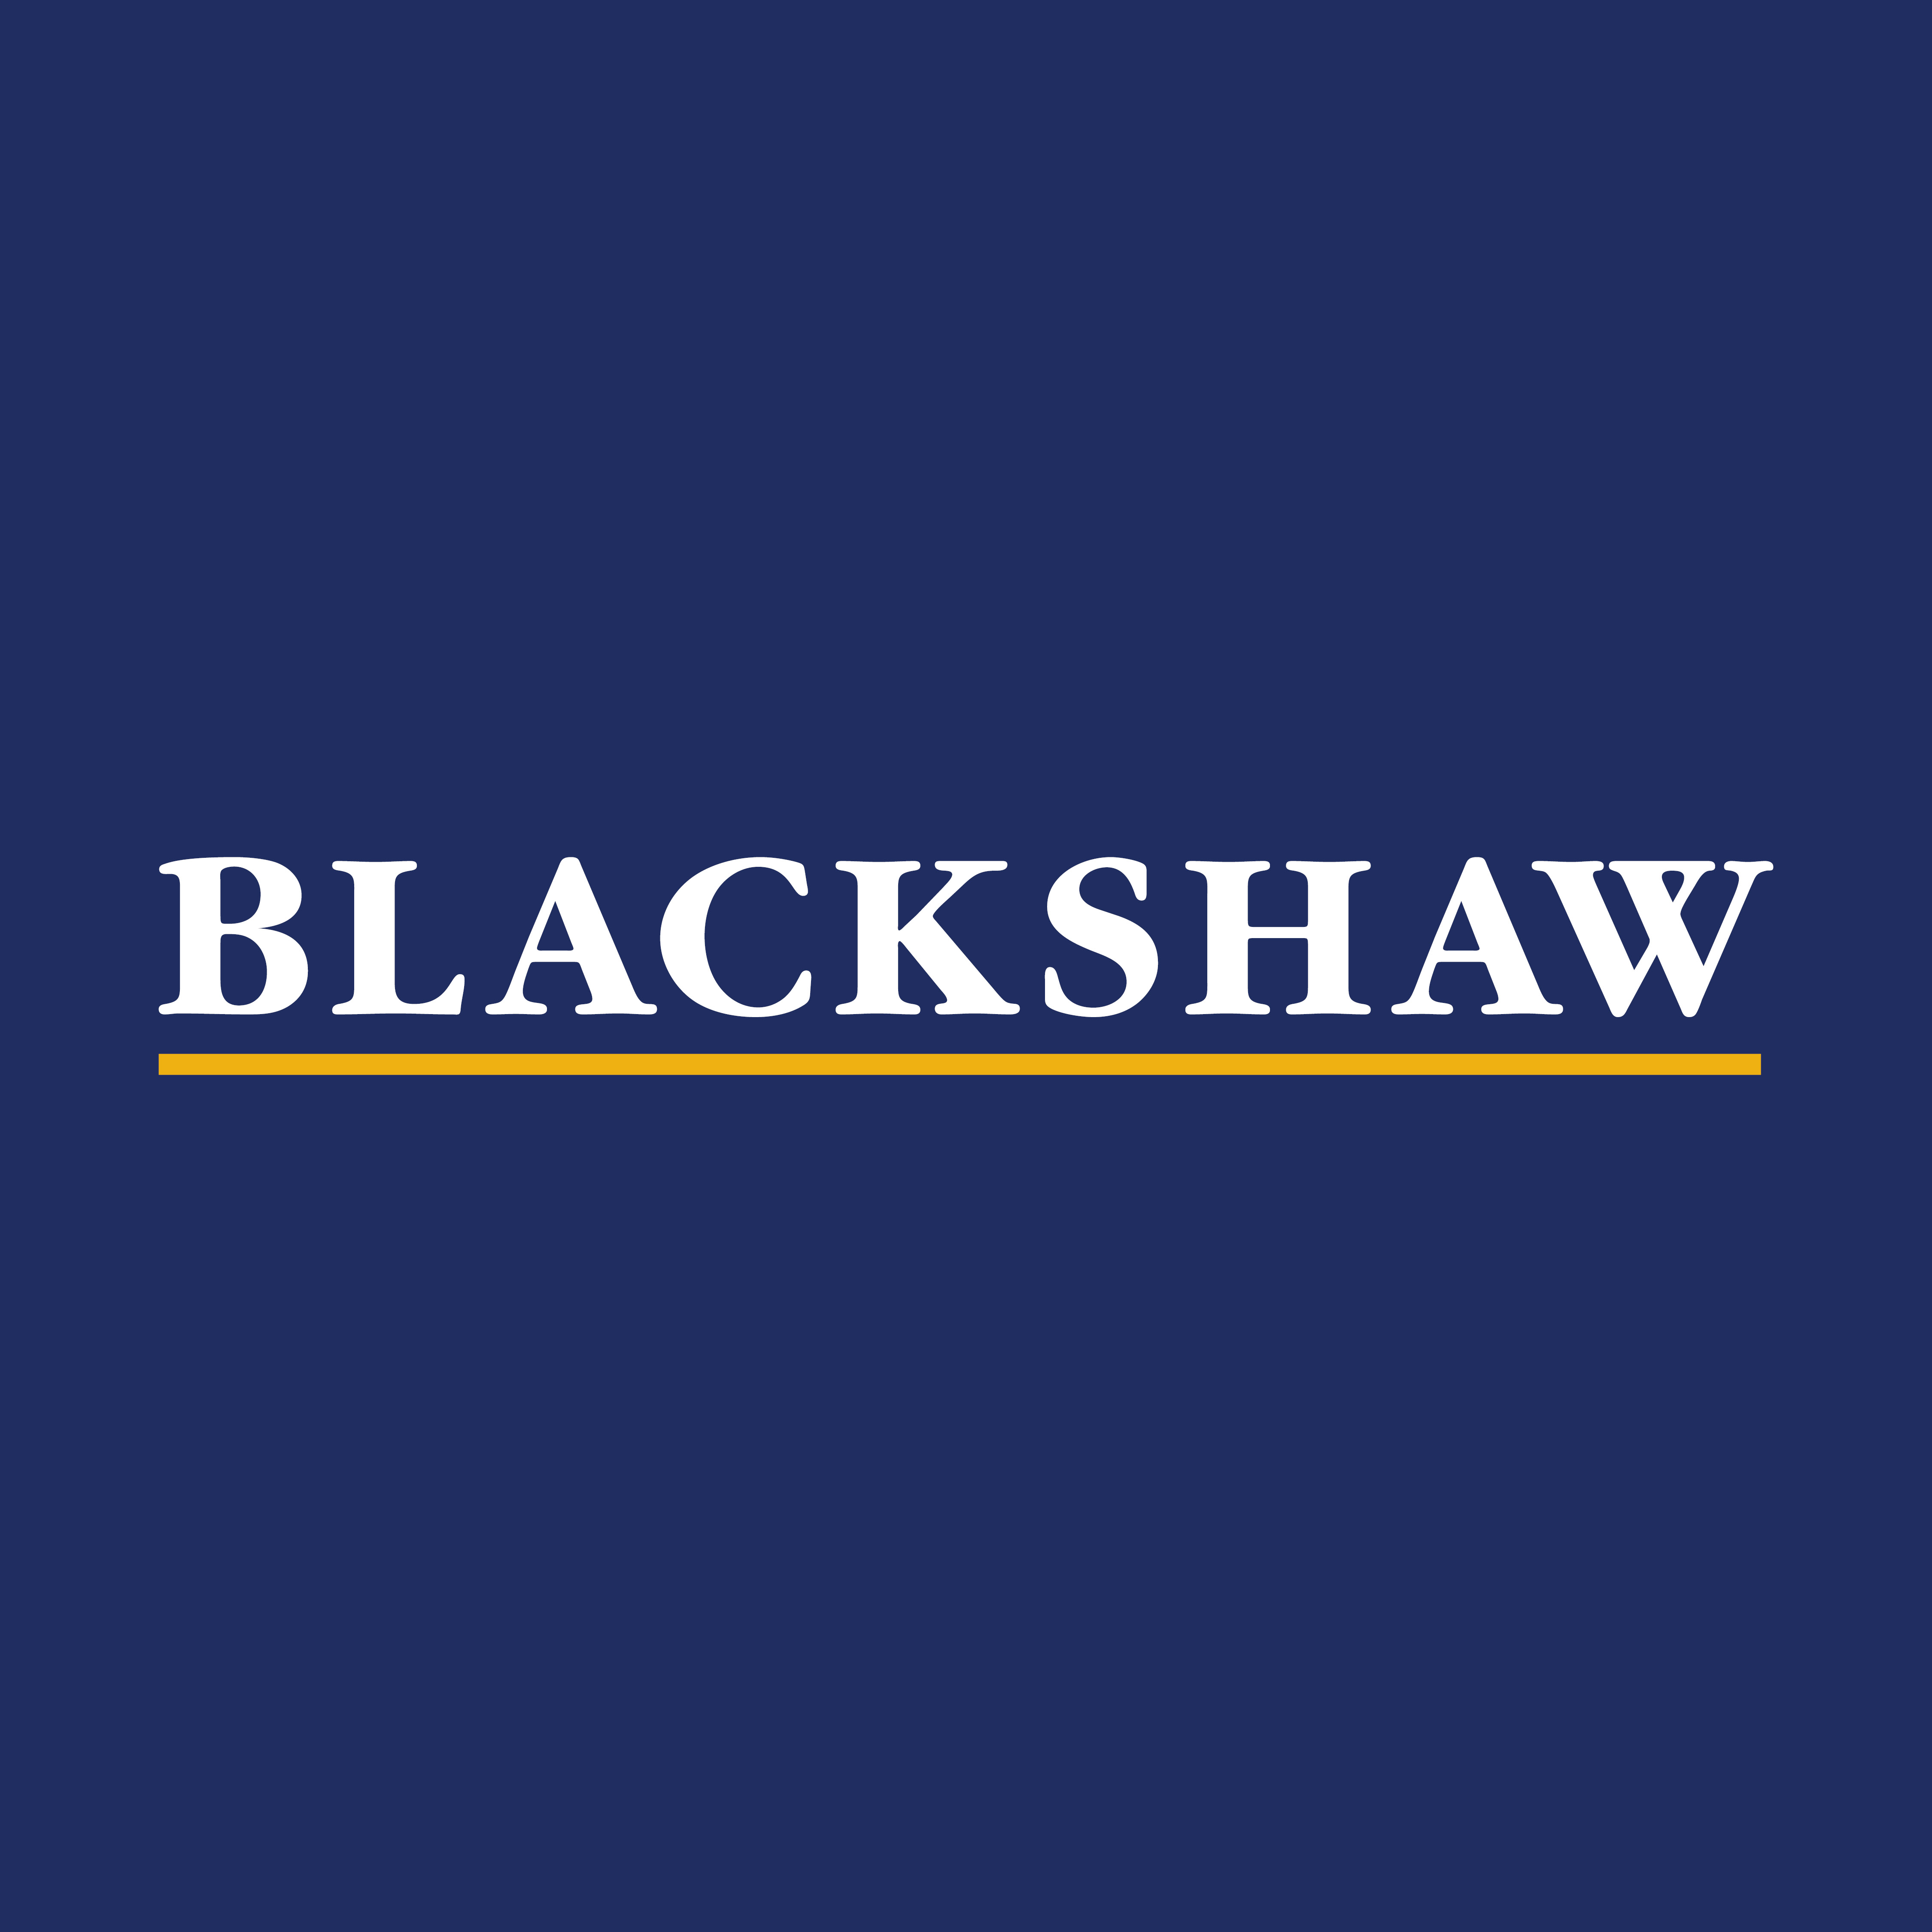 Blackshaw Woden Tuggeranong Real Estate Agent